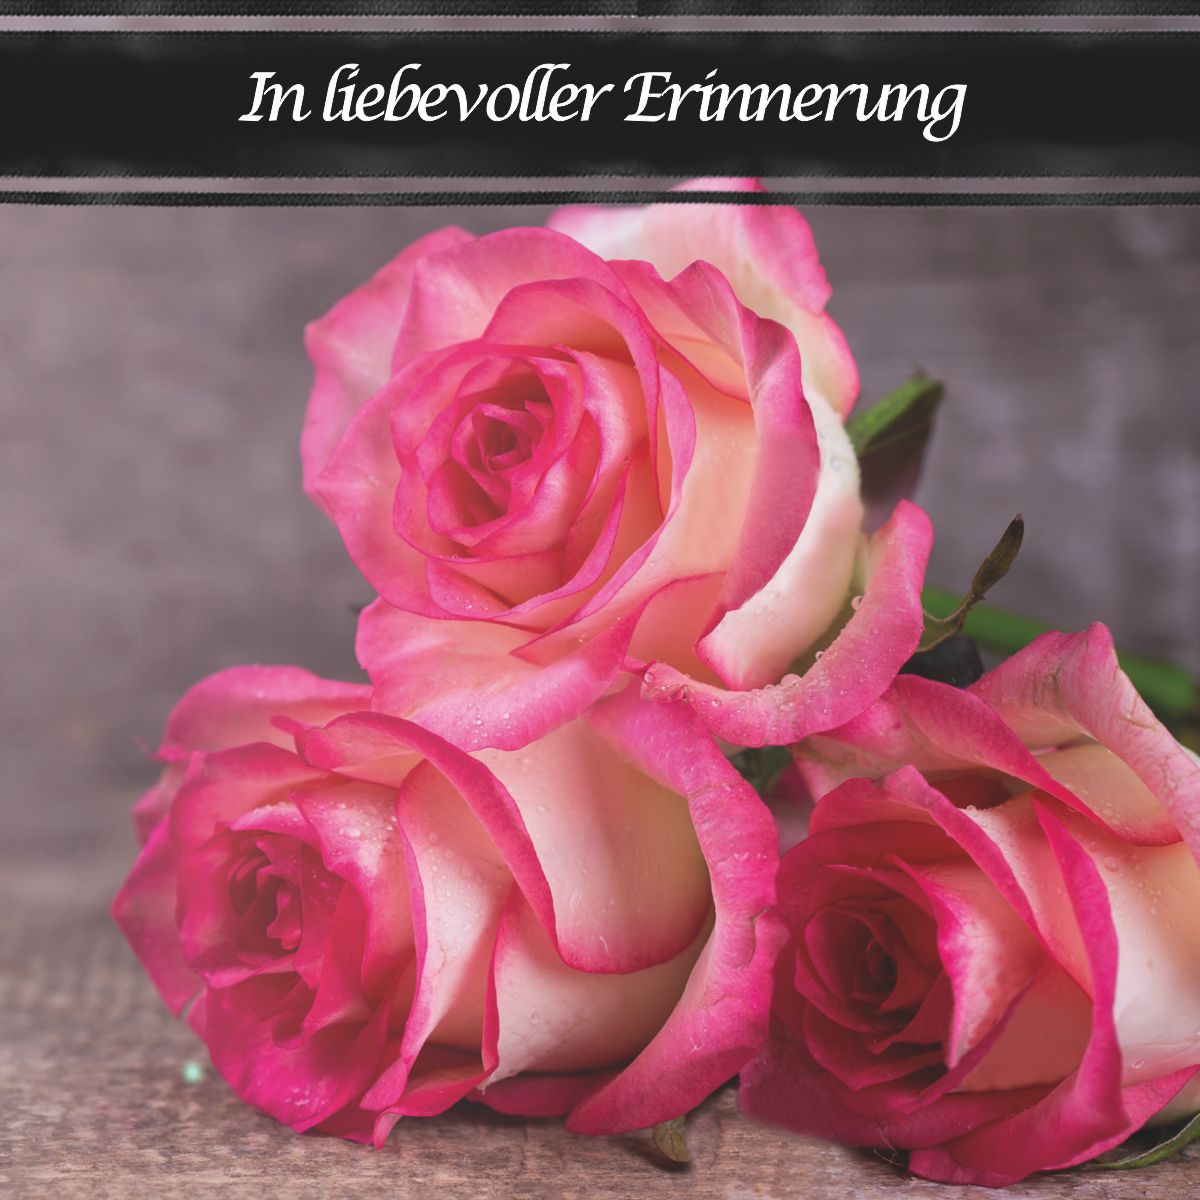 Motiv Foto drei rosa Rosen mit Text "In liebevoller Erinnerung"